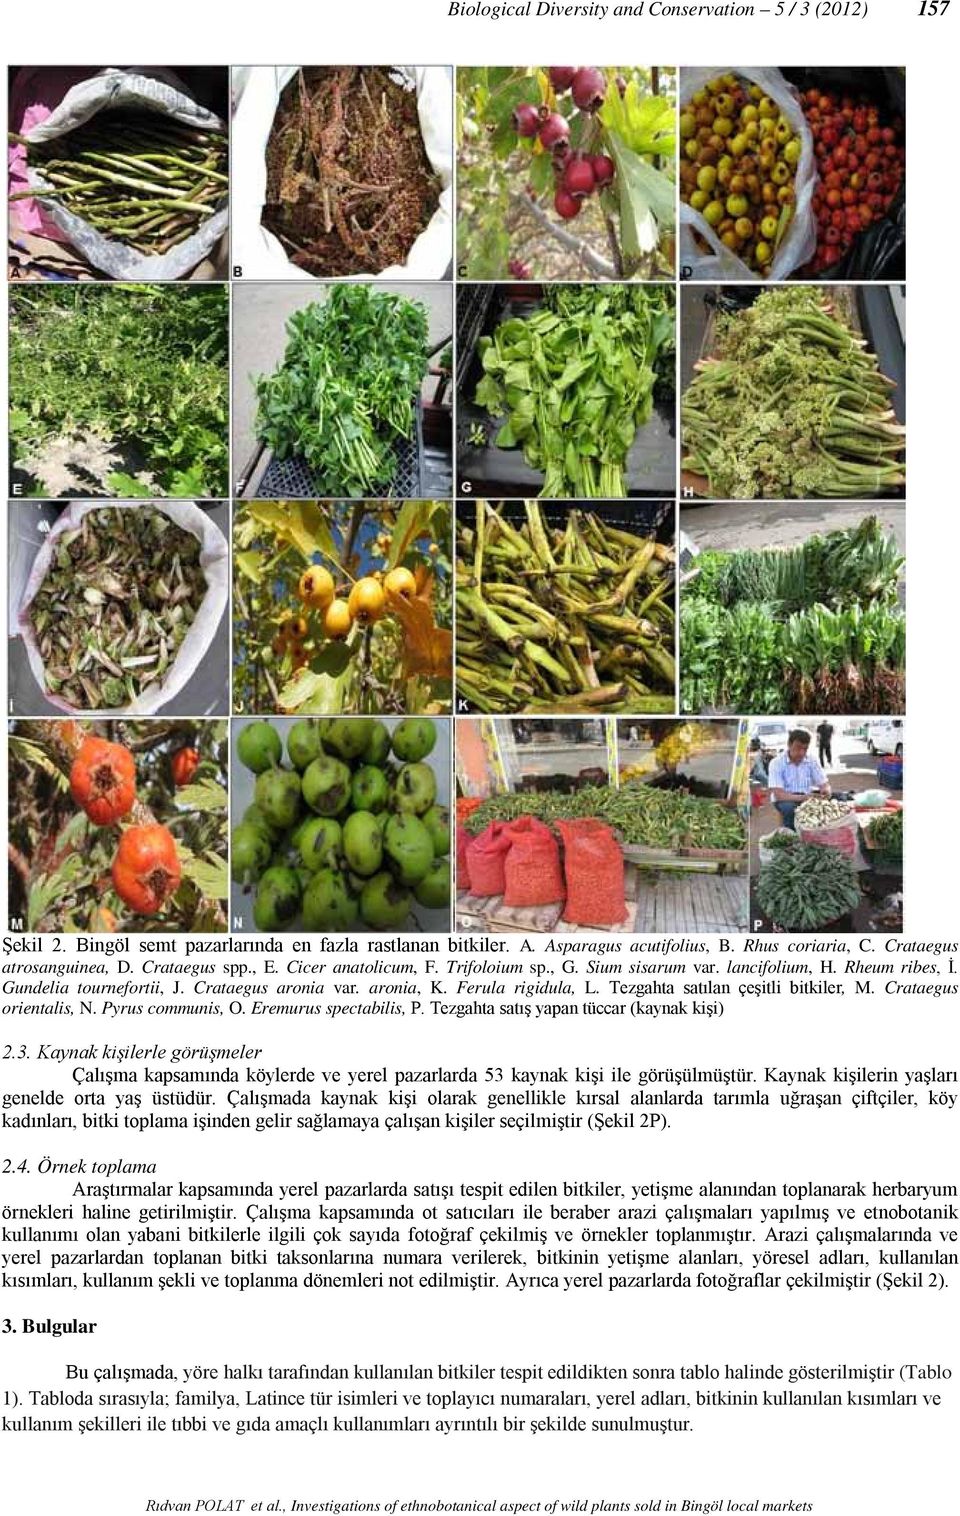 Tezgahta satılan çeşitli bitkiler, M. Crataegus orientalis, N. Pyrus communis, O. Eremurus spectabilis, P. Tezgahta satış yapan tüccar (kaynak kişi) 2.3.